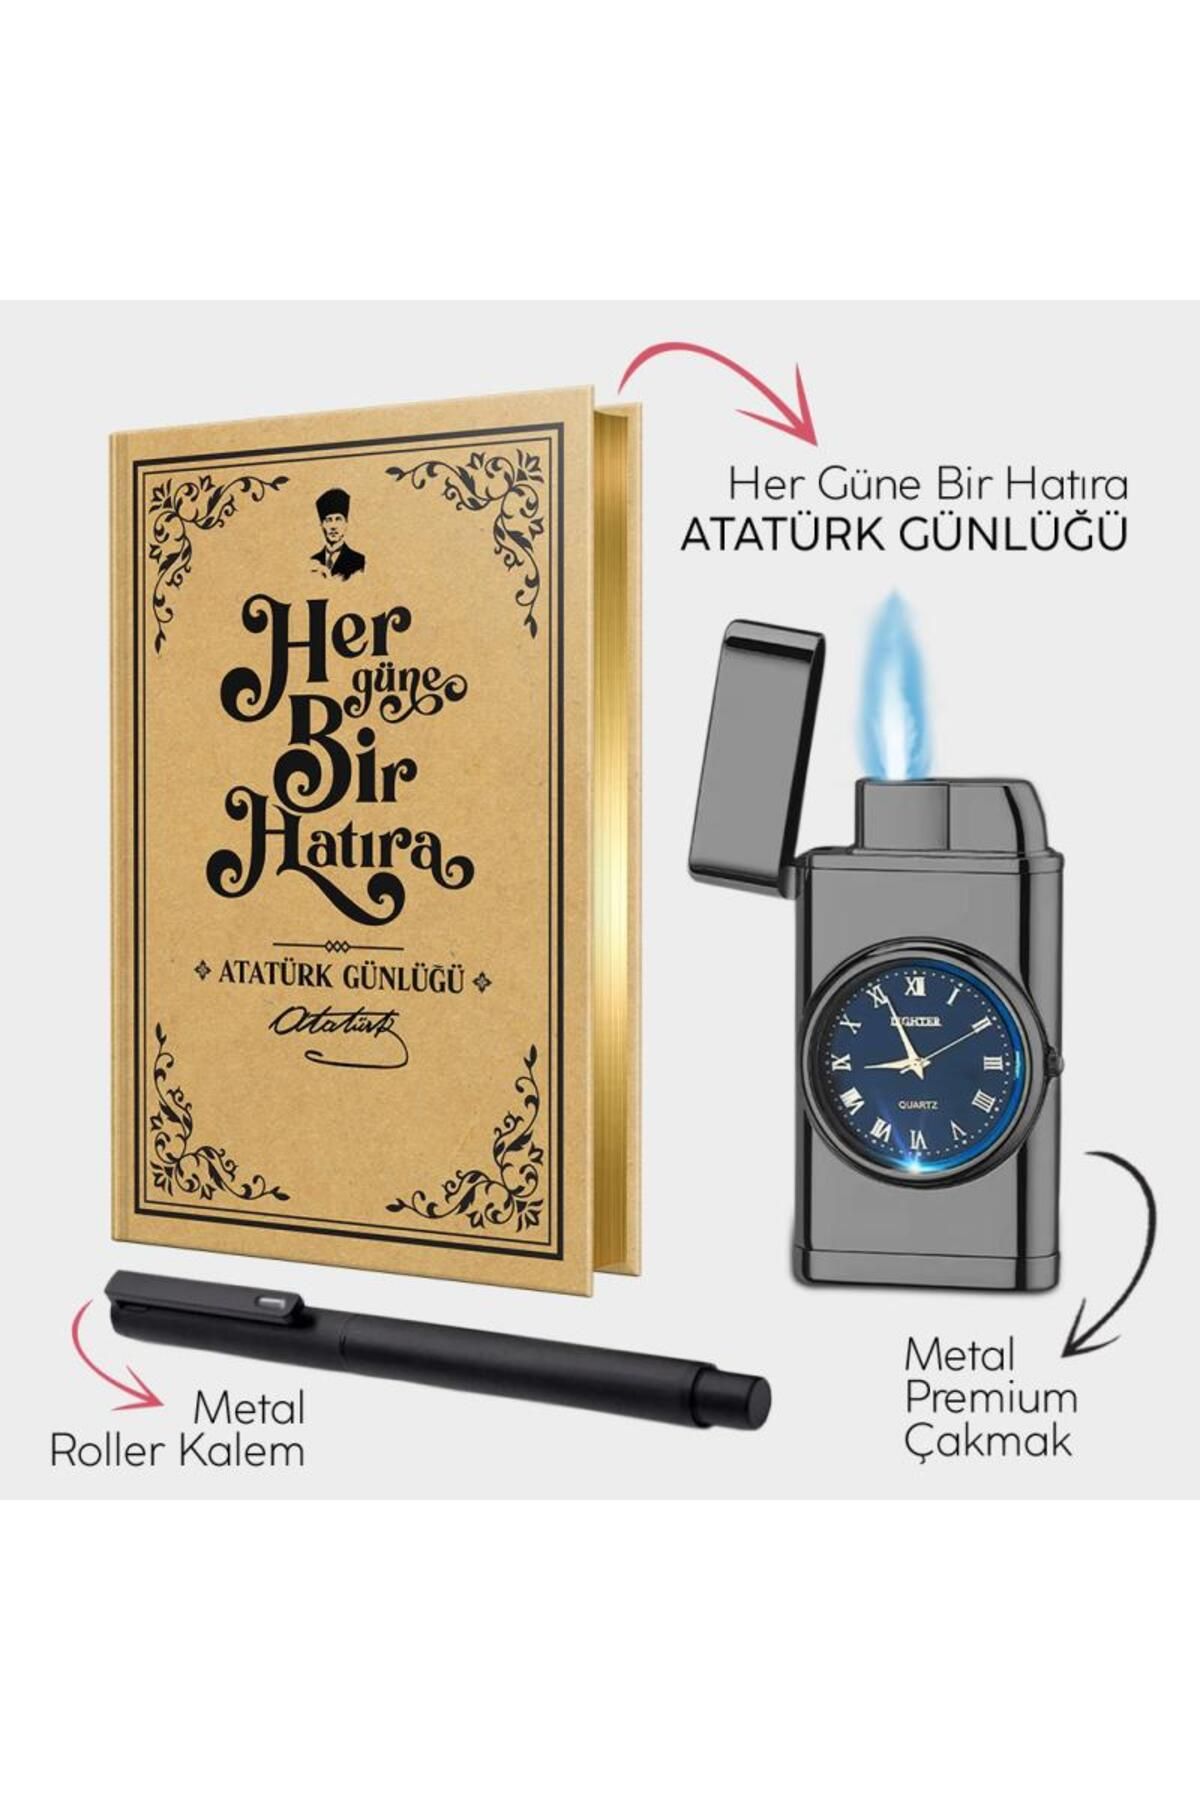 Halk Kitabevi Atatürk Günlüğü - Piano Black Saatli Çakmak - Metal Roller Kalem